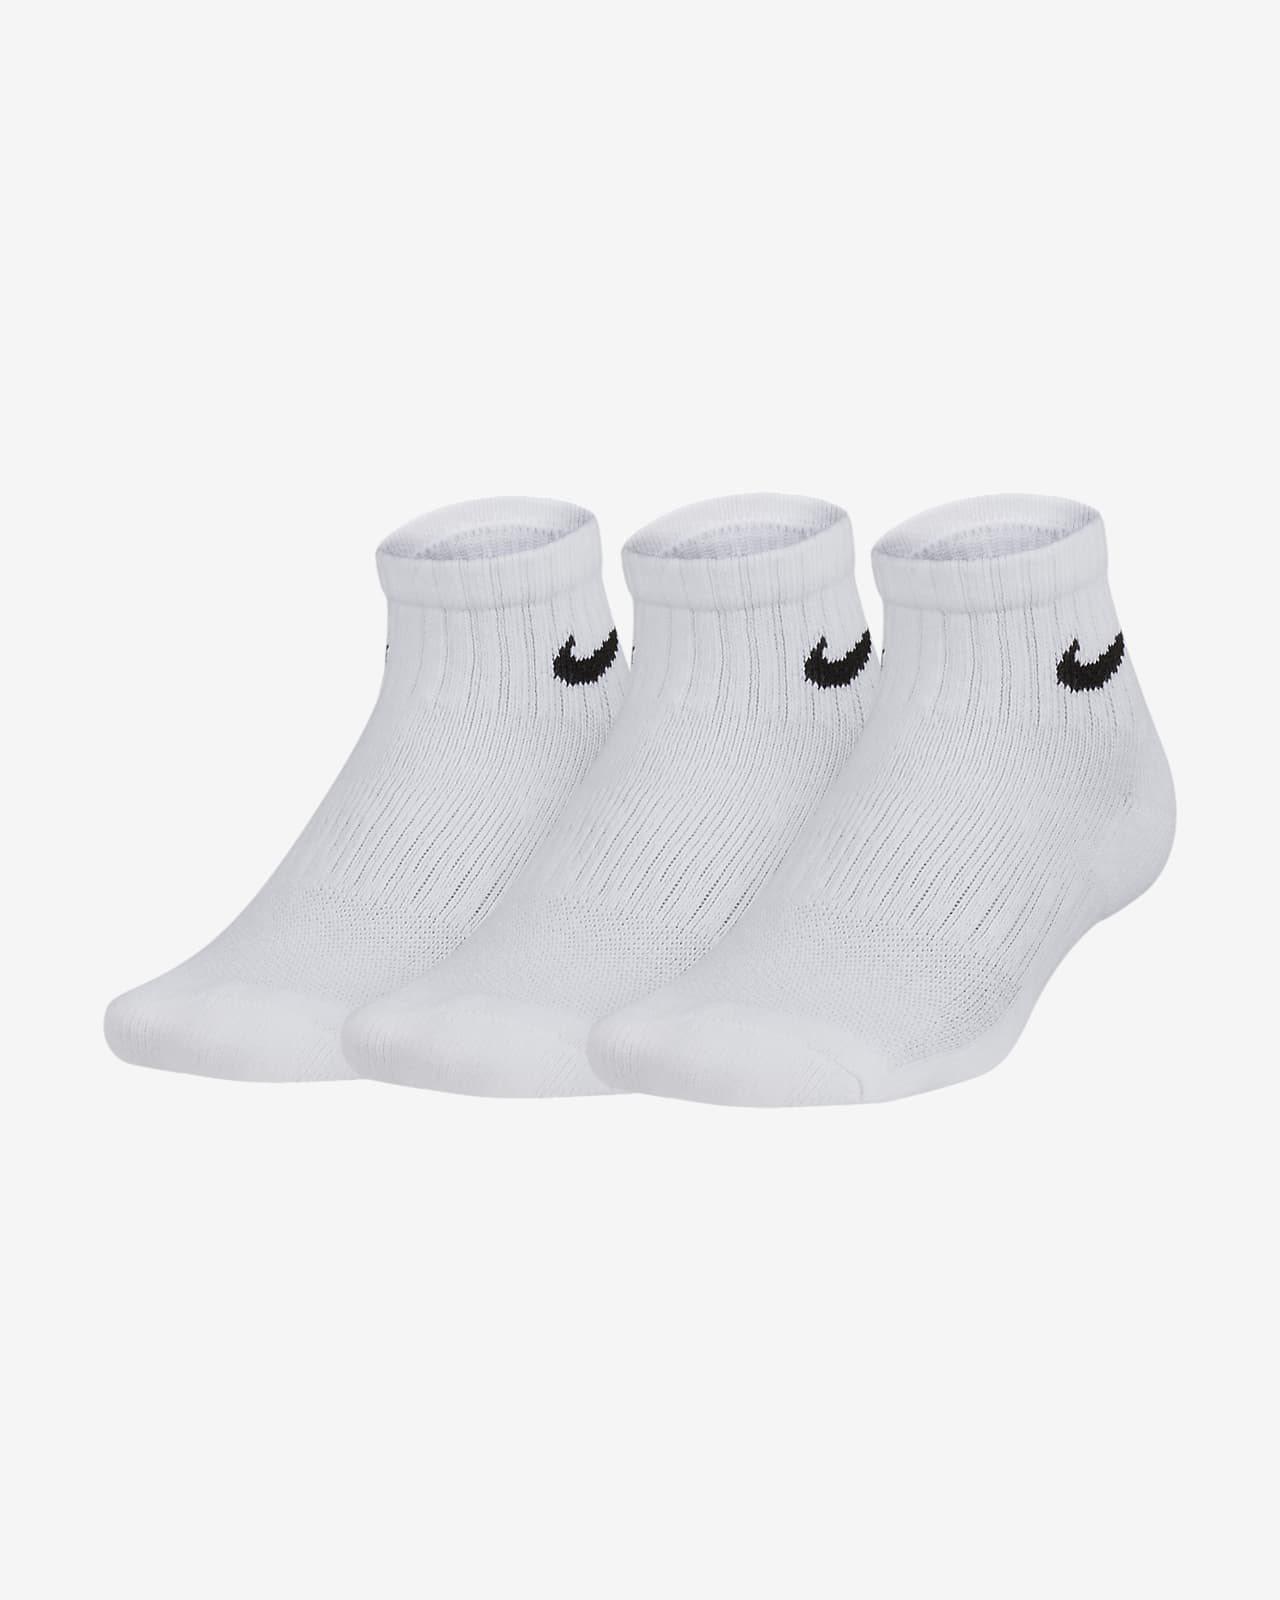 mens white nike ankle socks